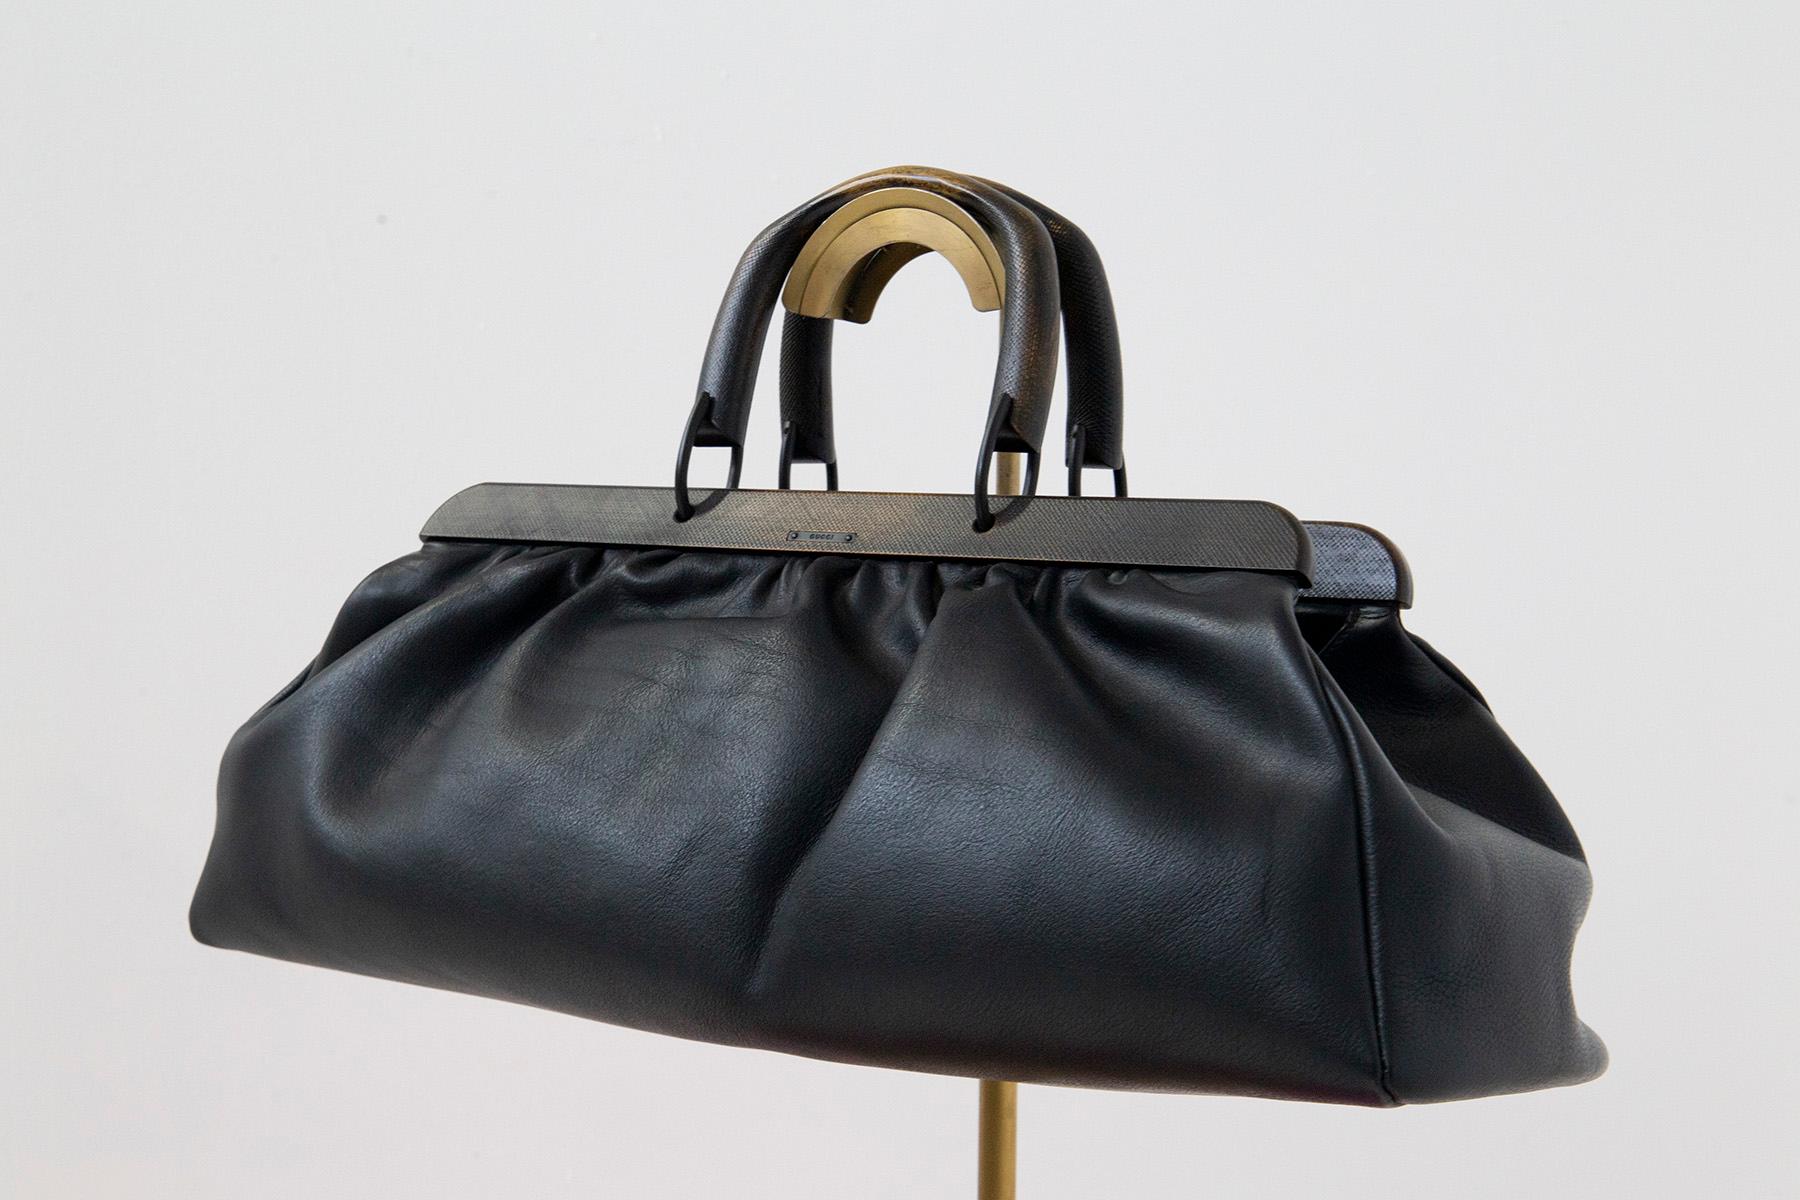 Gucci Day Bag Modell Doctor's Bag aus schwarzem Leder.
Gucci schwarzes gehämmertes Leder Seesack oder Tagestasche von Tom Ford namens Doctor's Bag. Das Besondere an der Tasche ist die Holzumrandung und die Griffe in Antikoptik. 
Das Gucci-Logo ist